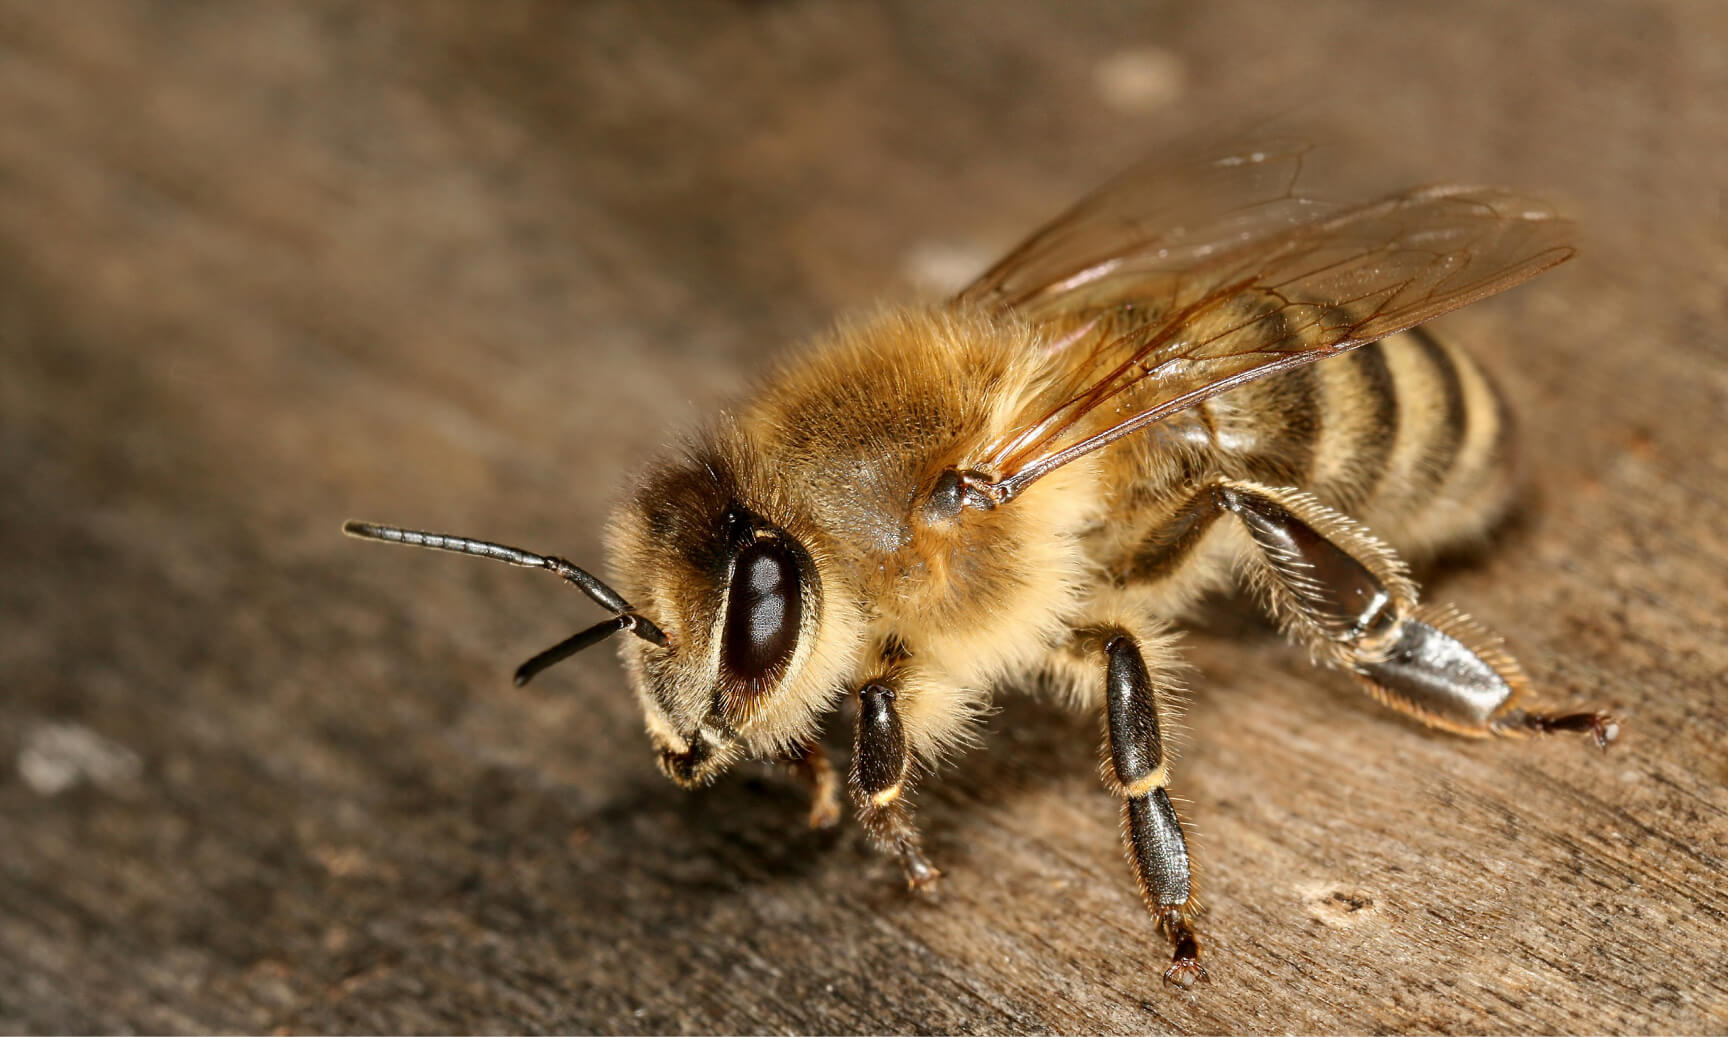 "Casele de albine" fabricate aditivat pentru a stimula interesul public pentru prezervarea albinelor